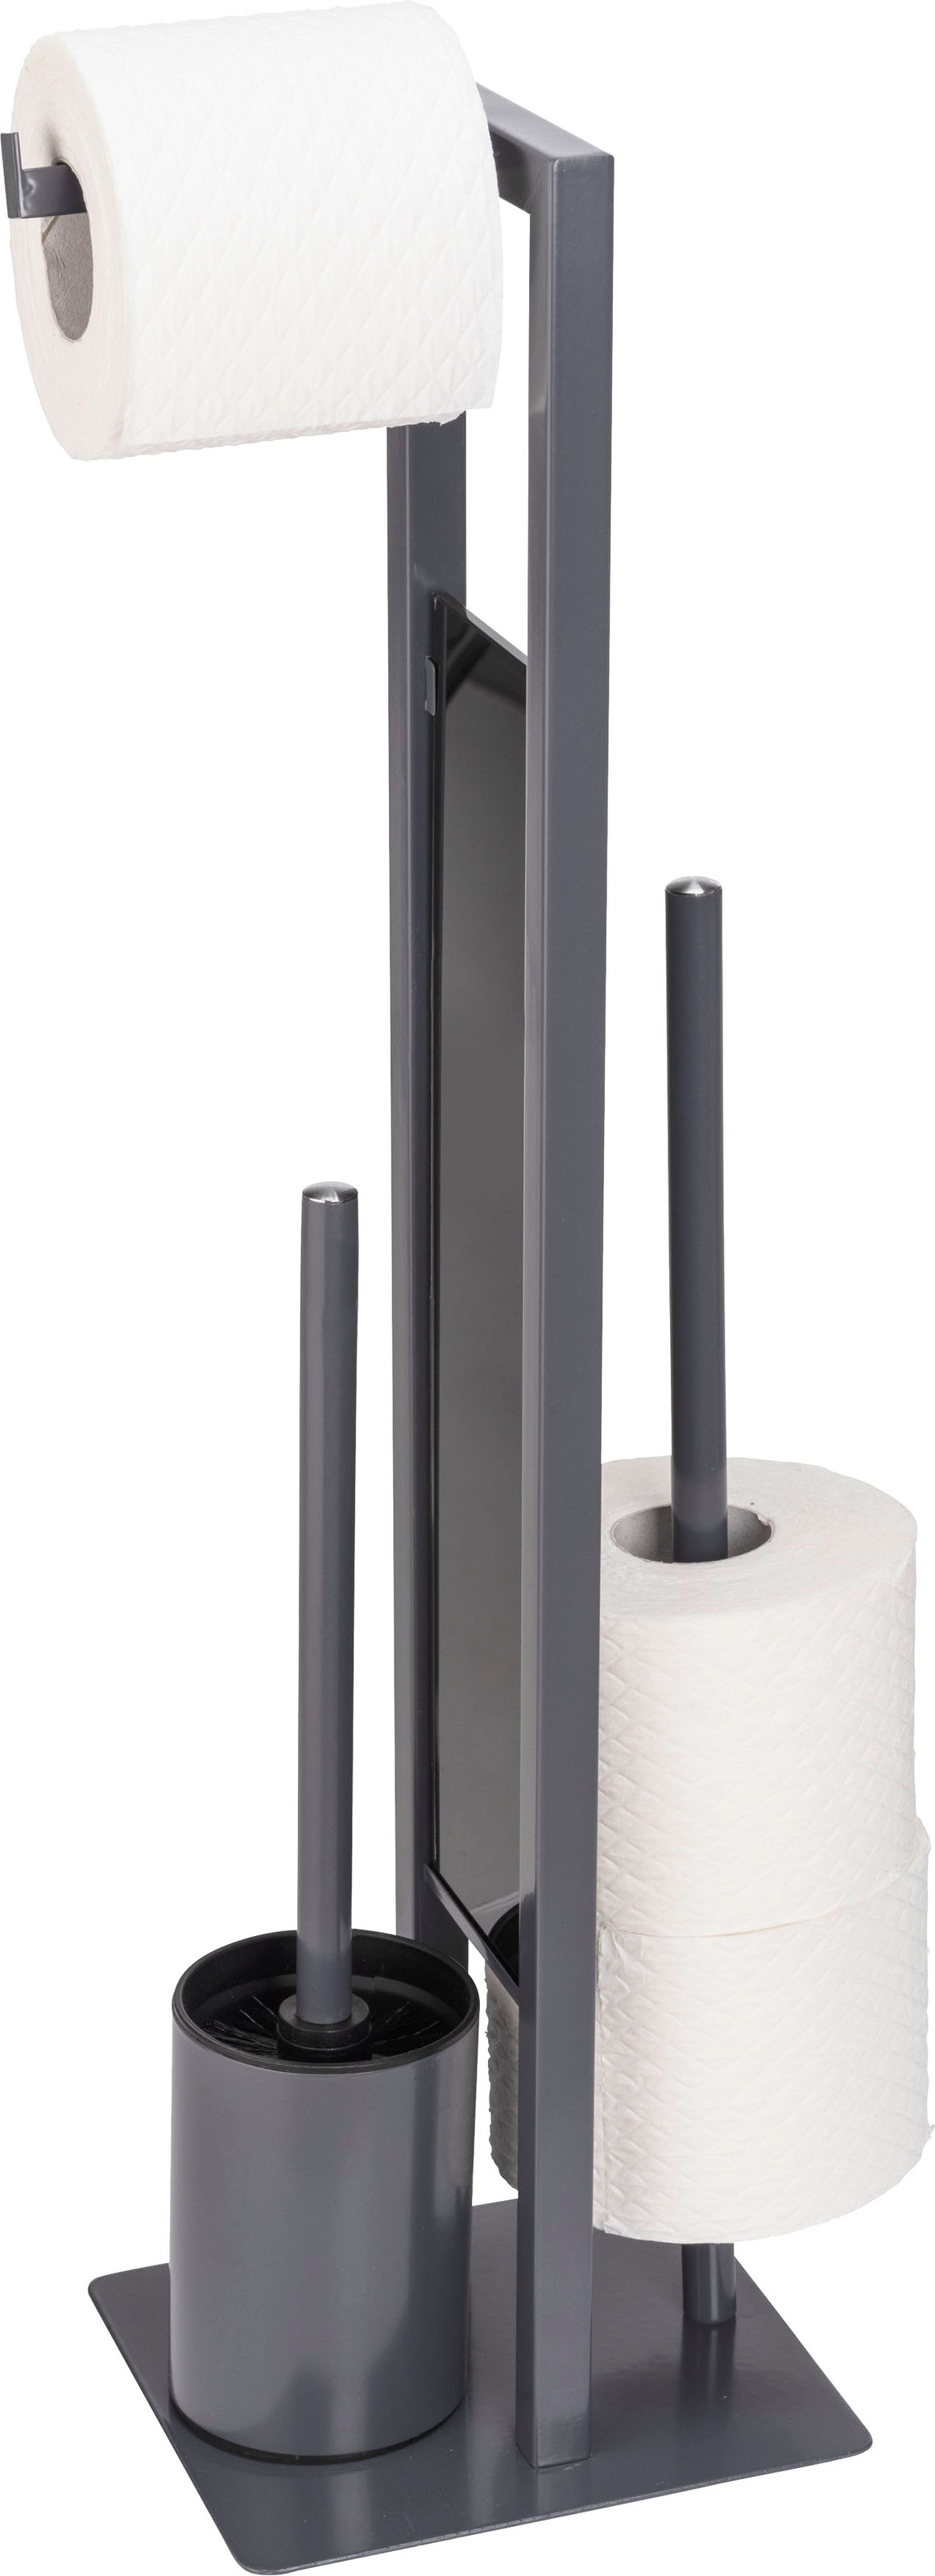 WENKO WC-Garnitur »Rivalta«, aus Stahl-Glas-Polypropylen, Sicherheitsglas online kaufen aus grau, Platte